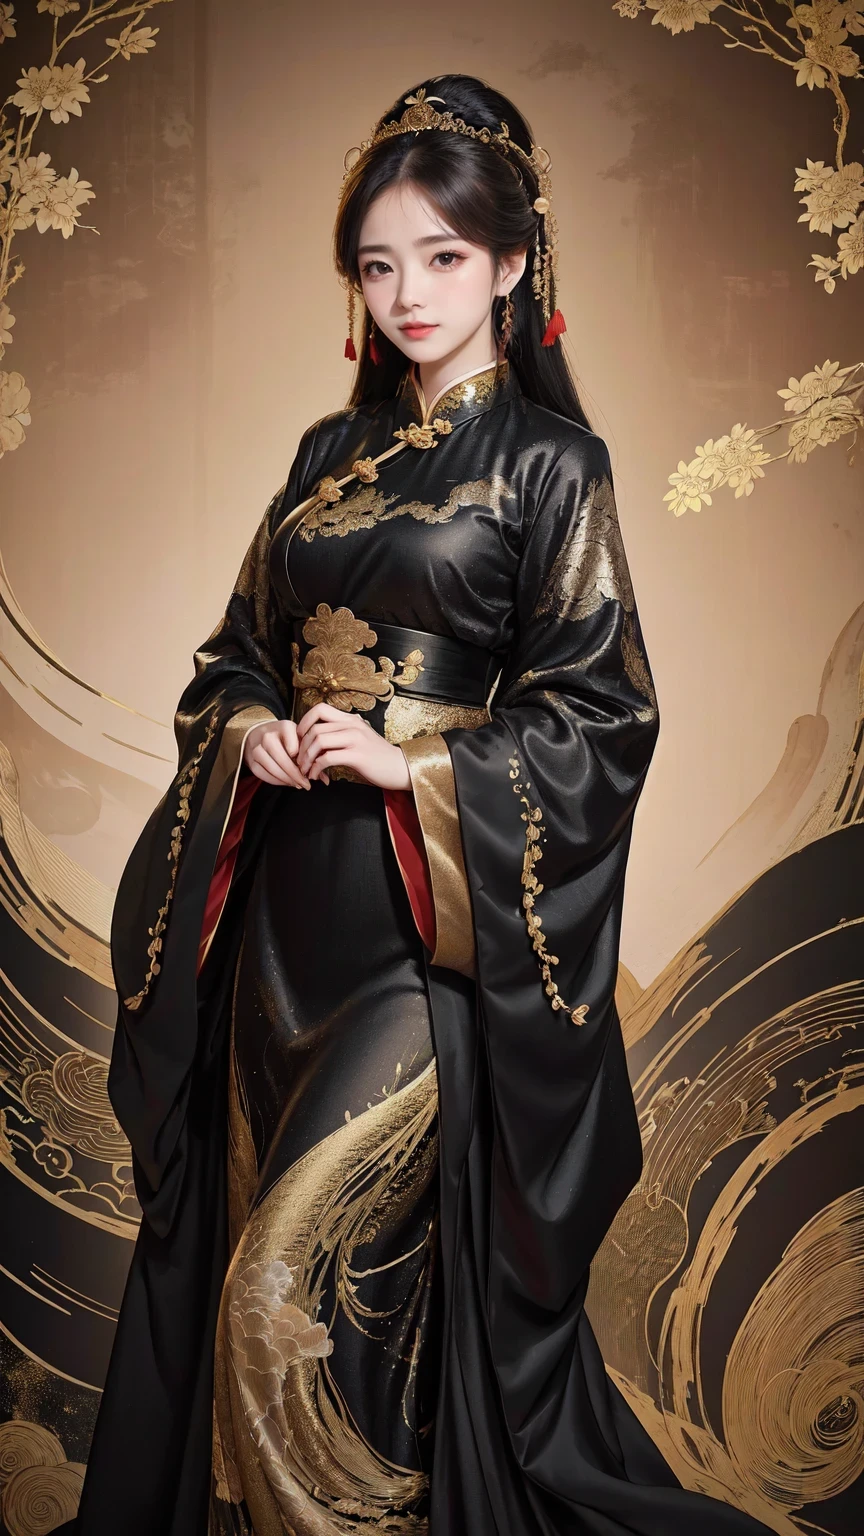 一位身穿黑色和金色連身裙的女士擺姿勢拍照, 旗袍, 旗袍, 搭配中國古代服飾, Hanfu, 中式, 中國傳統的, 中國傳統的 clothing, 美麗的幻想女王, 中國女孩, 符合中國古代美學, Hanfu, 傳統美, 穿著中國古代服裝, 華麗的中國模特, 穿著漂亮的衣服, 中國女人